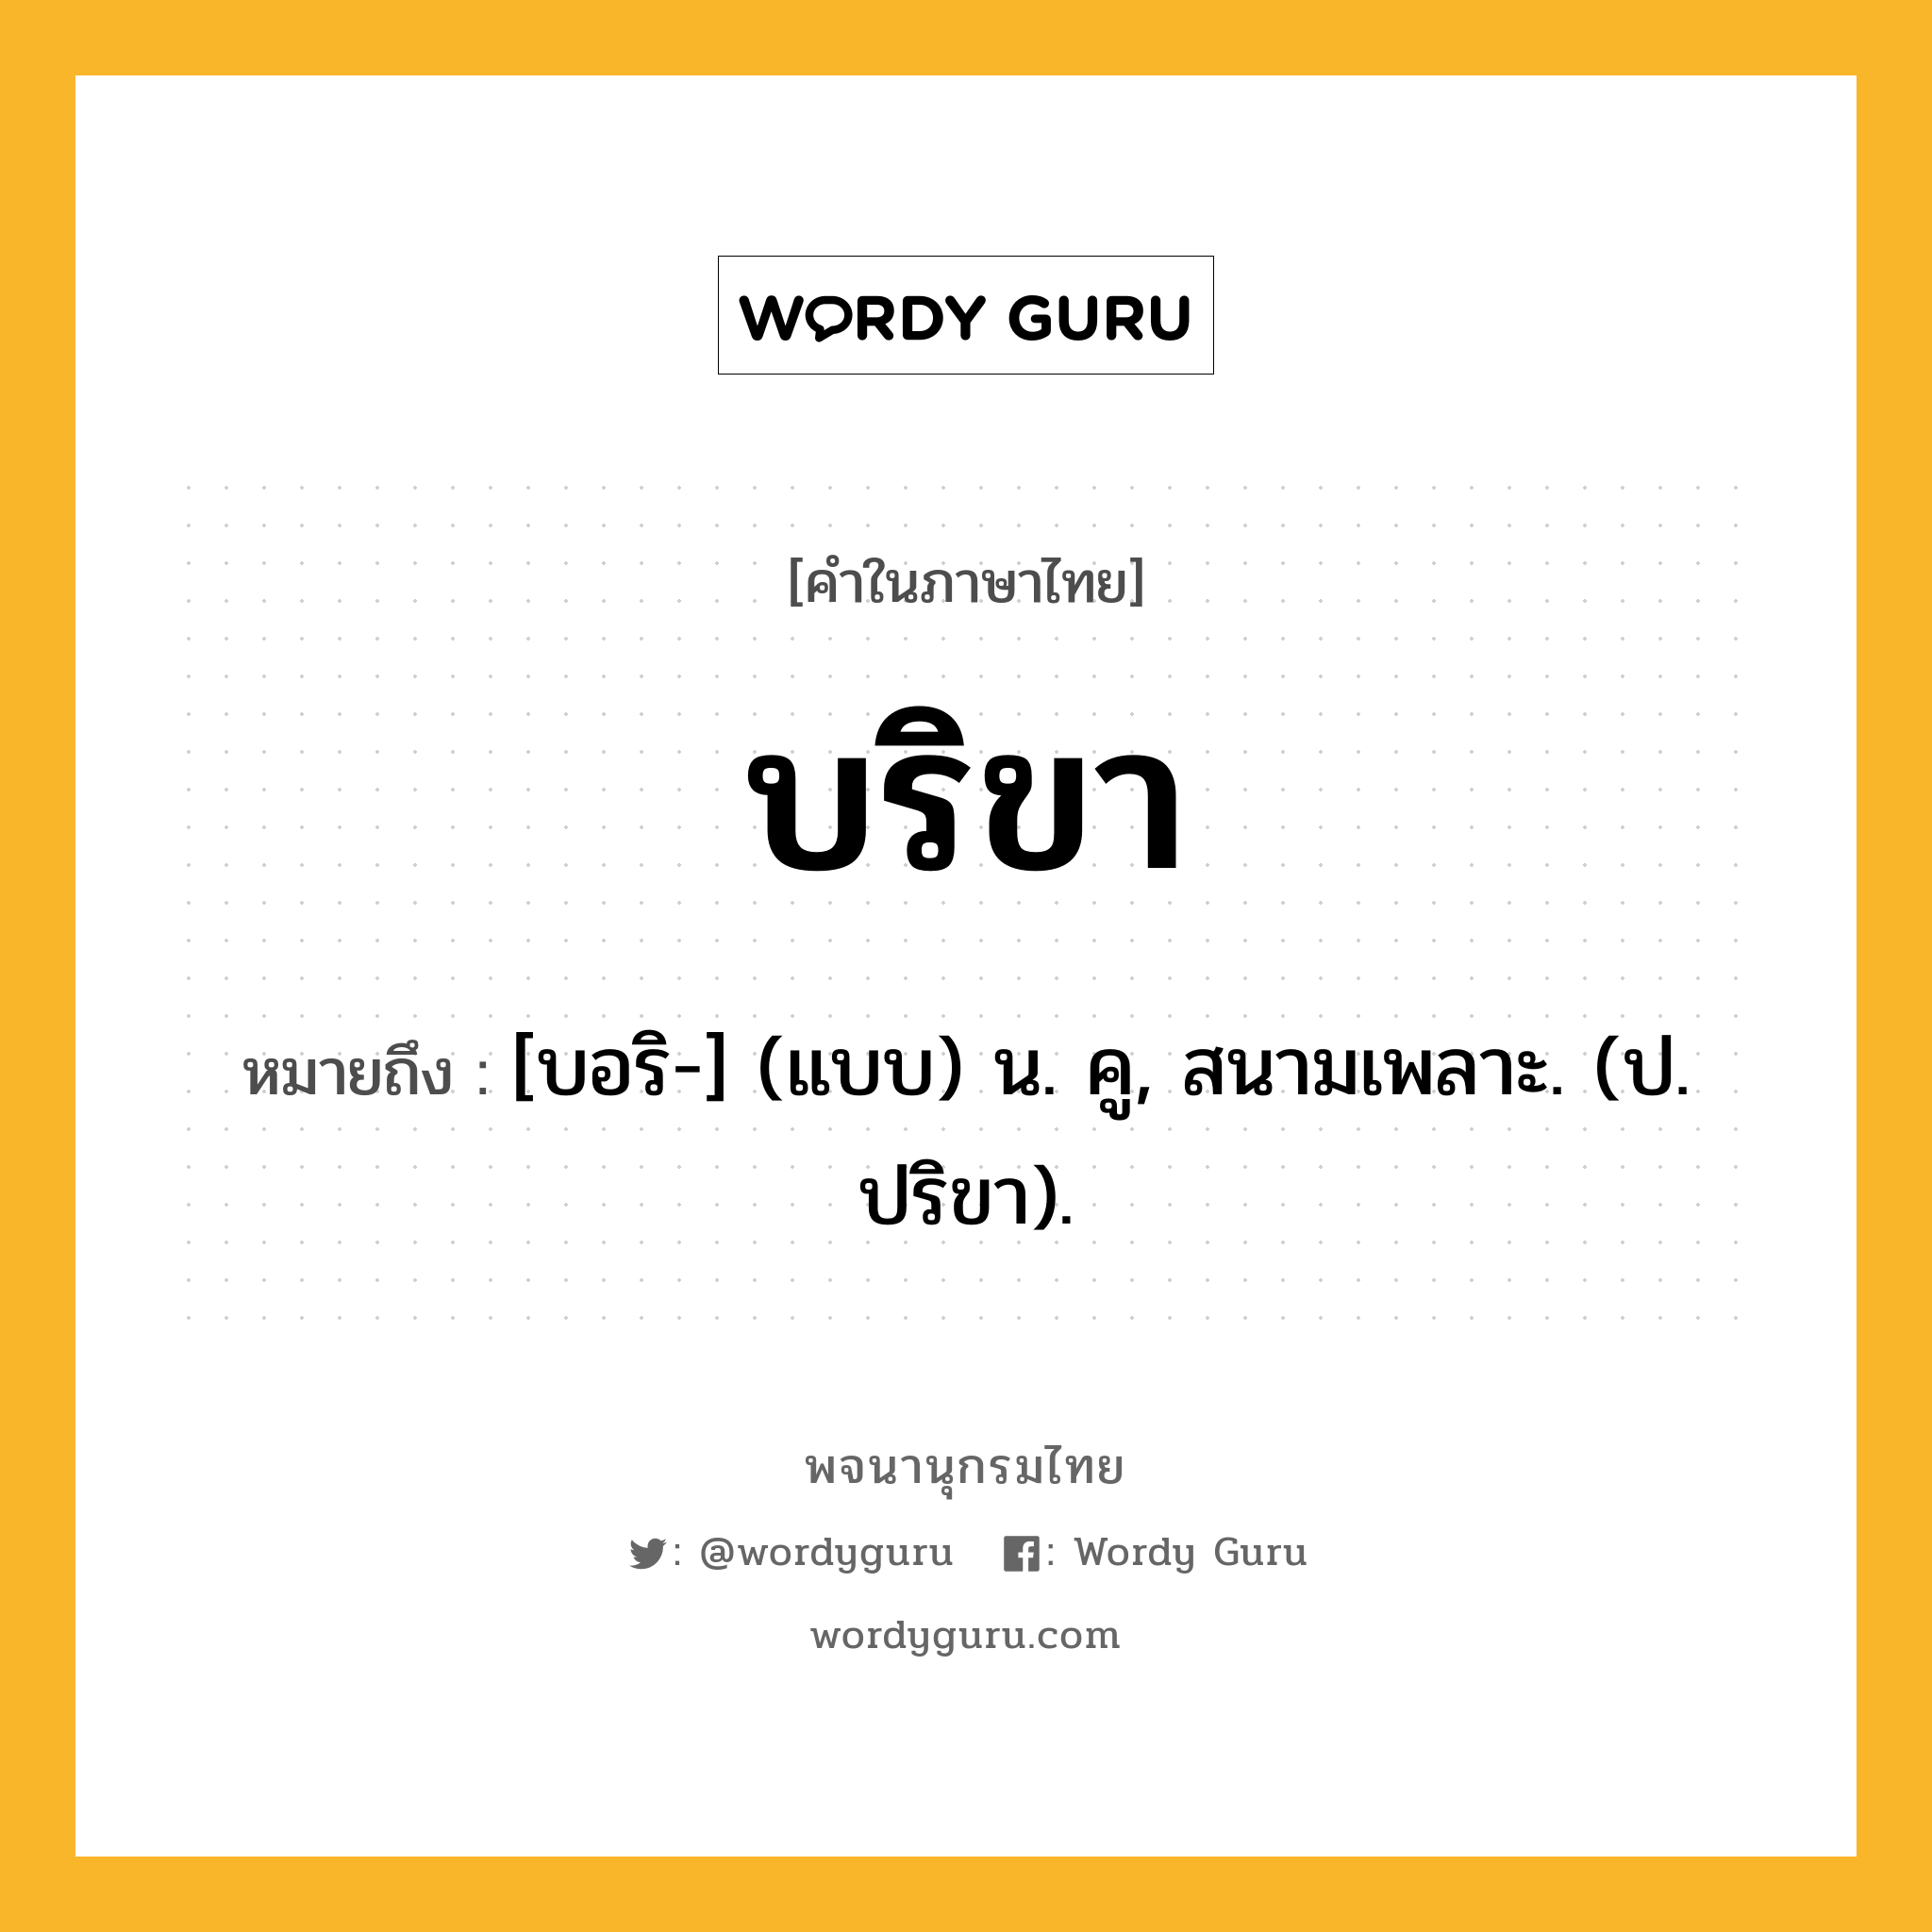 บริขา ความหมาย หมายถึงอะไร?, คำในภาษาไทย บริขา หมายถึง [บอริ-] (แบบ) น. คู, สนามเพลาะ. (ป. ปริขา).